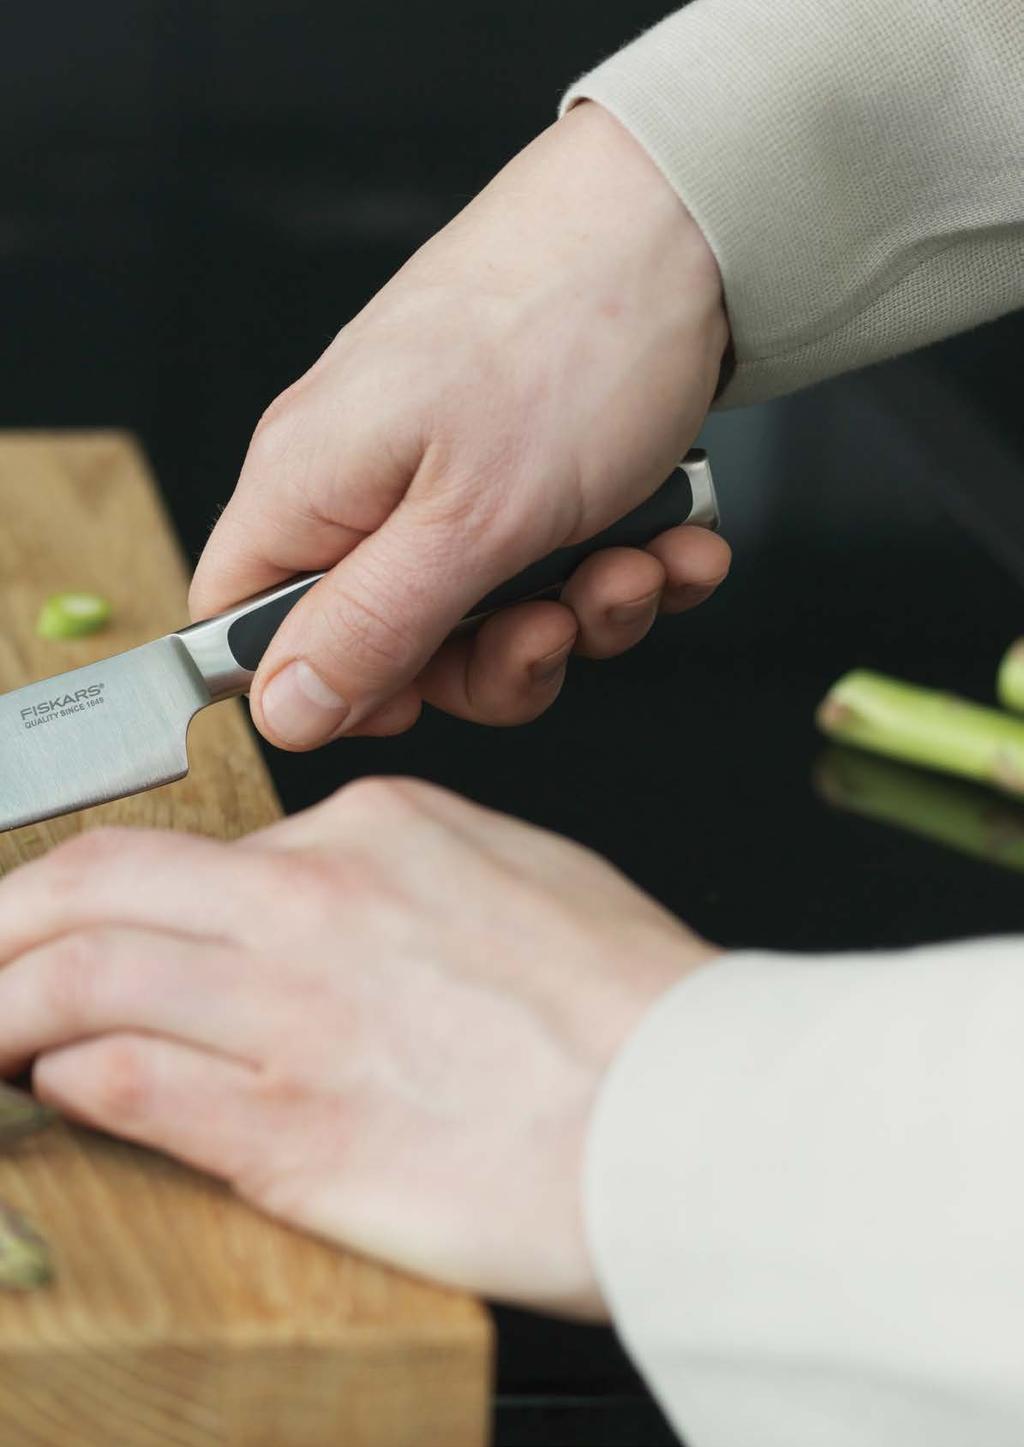 Fiskars Royal nože přinášejí ten nejlepší zážitek z krájení pro mistry domácí kuchyně.